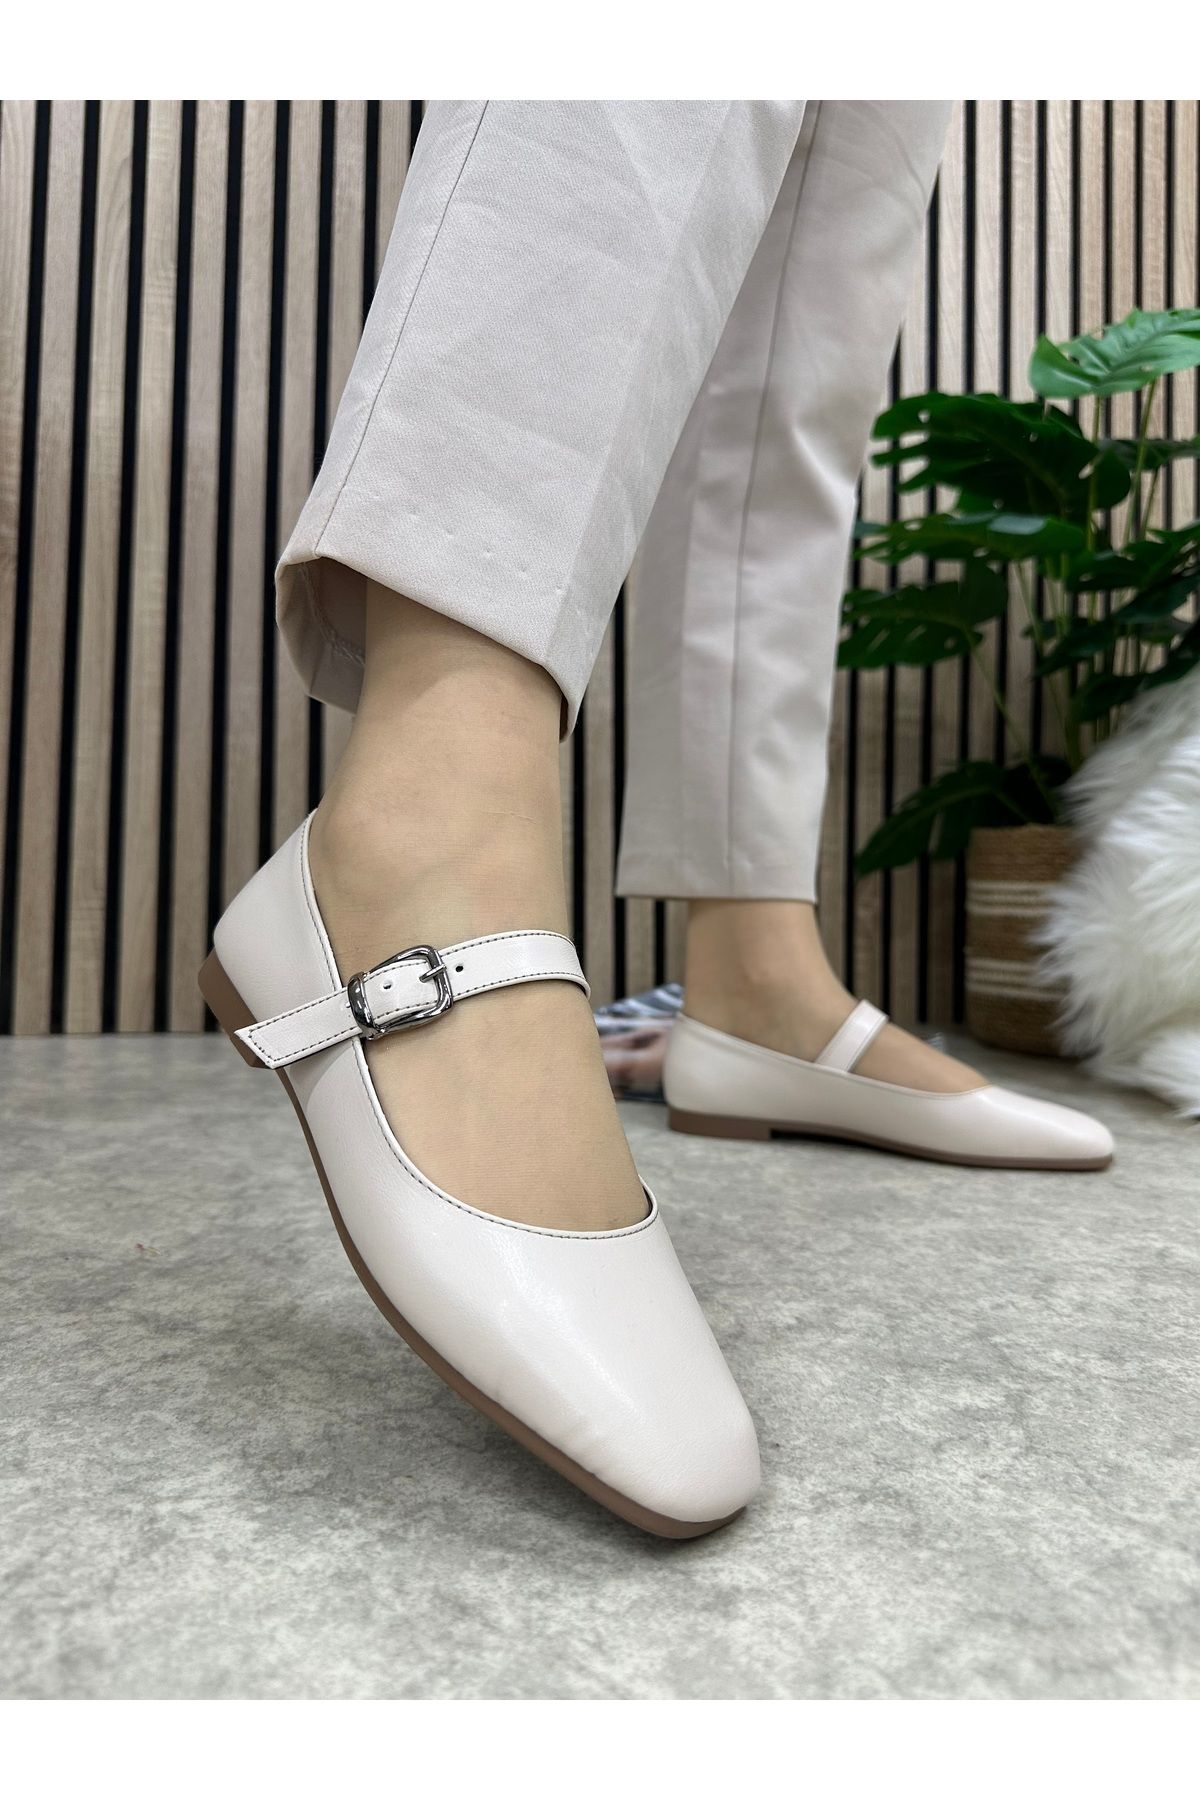 İmerShoes Günlük Kadın Bej Babet Oval Burun Alçak Topuk Tokalı Hafif Rahat Ayakkabı M-506